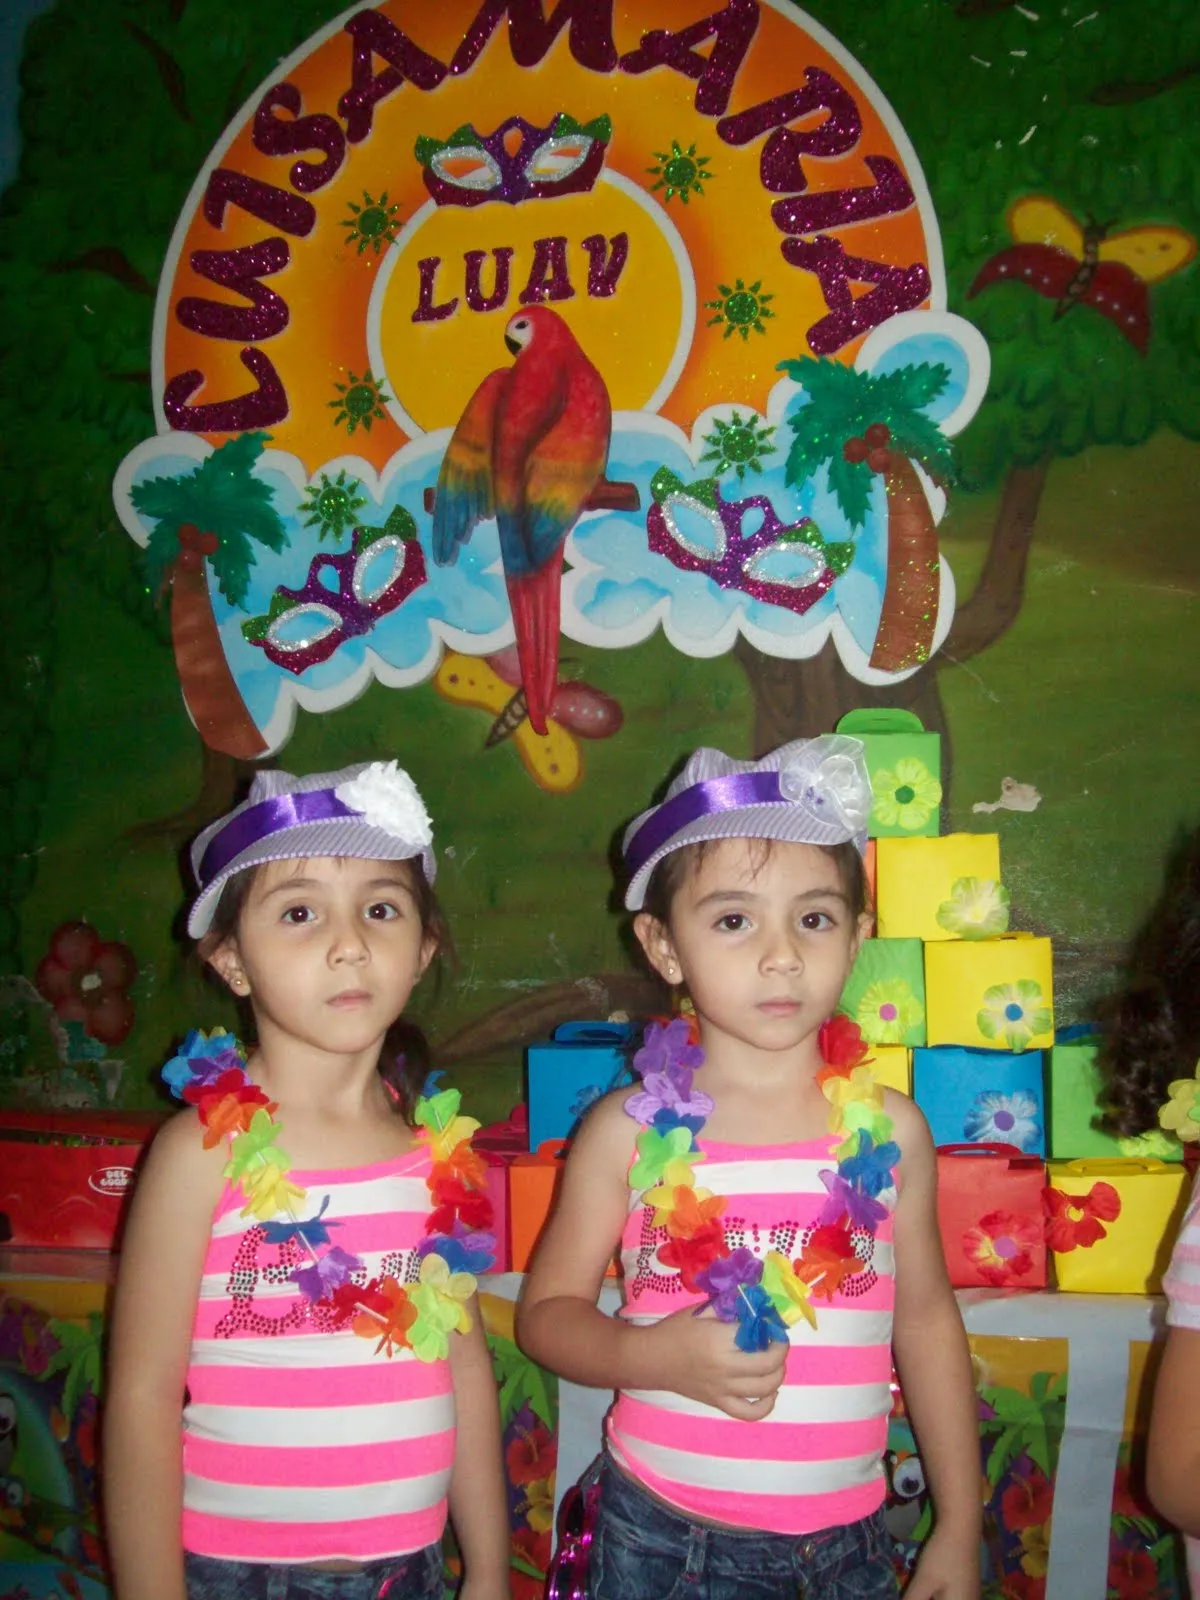 FIESTA HAWAIANA - LUAU | Fiestas infantiles Medellin, decoracion ...